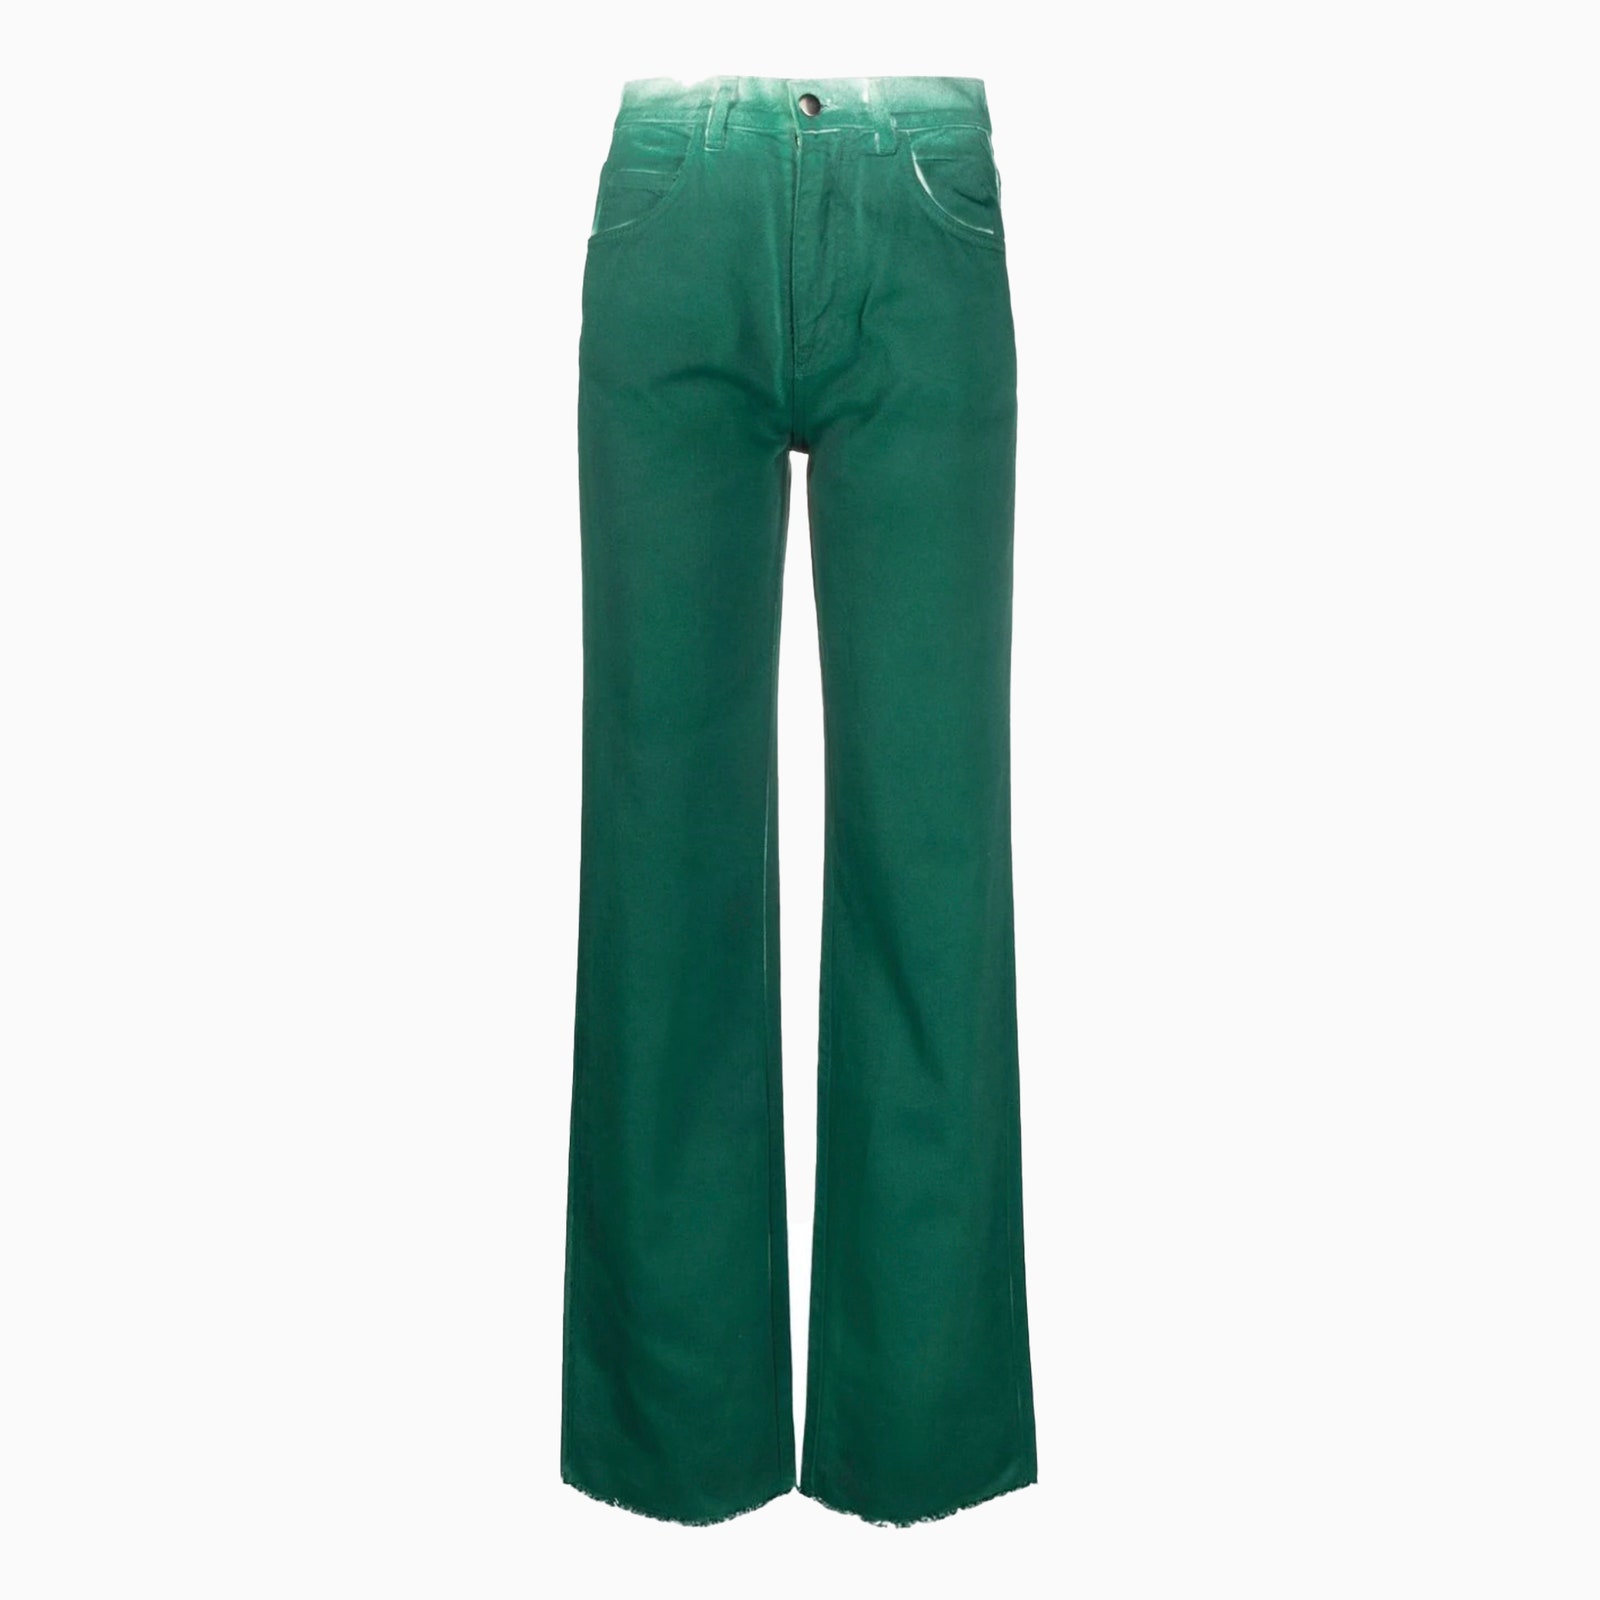 Зеленые брюки — отличная альтернатива черным и серым. Рассказываем как носить их каждый день